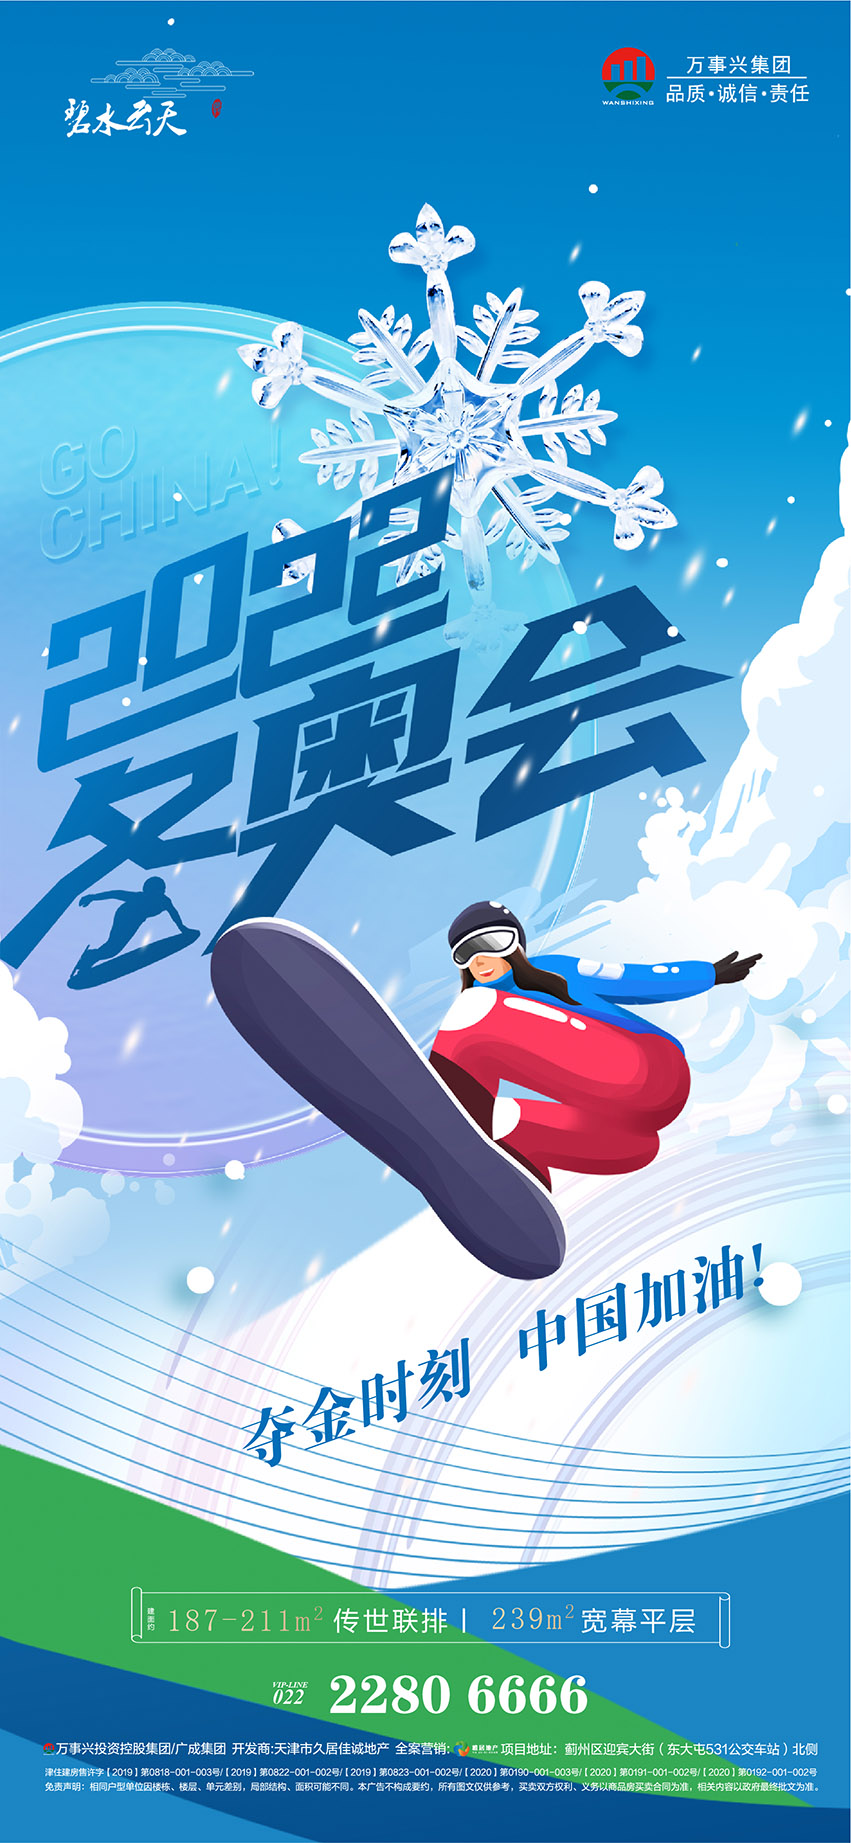 北京冬奥会助威加油系列海报-06.jpg